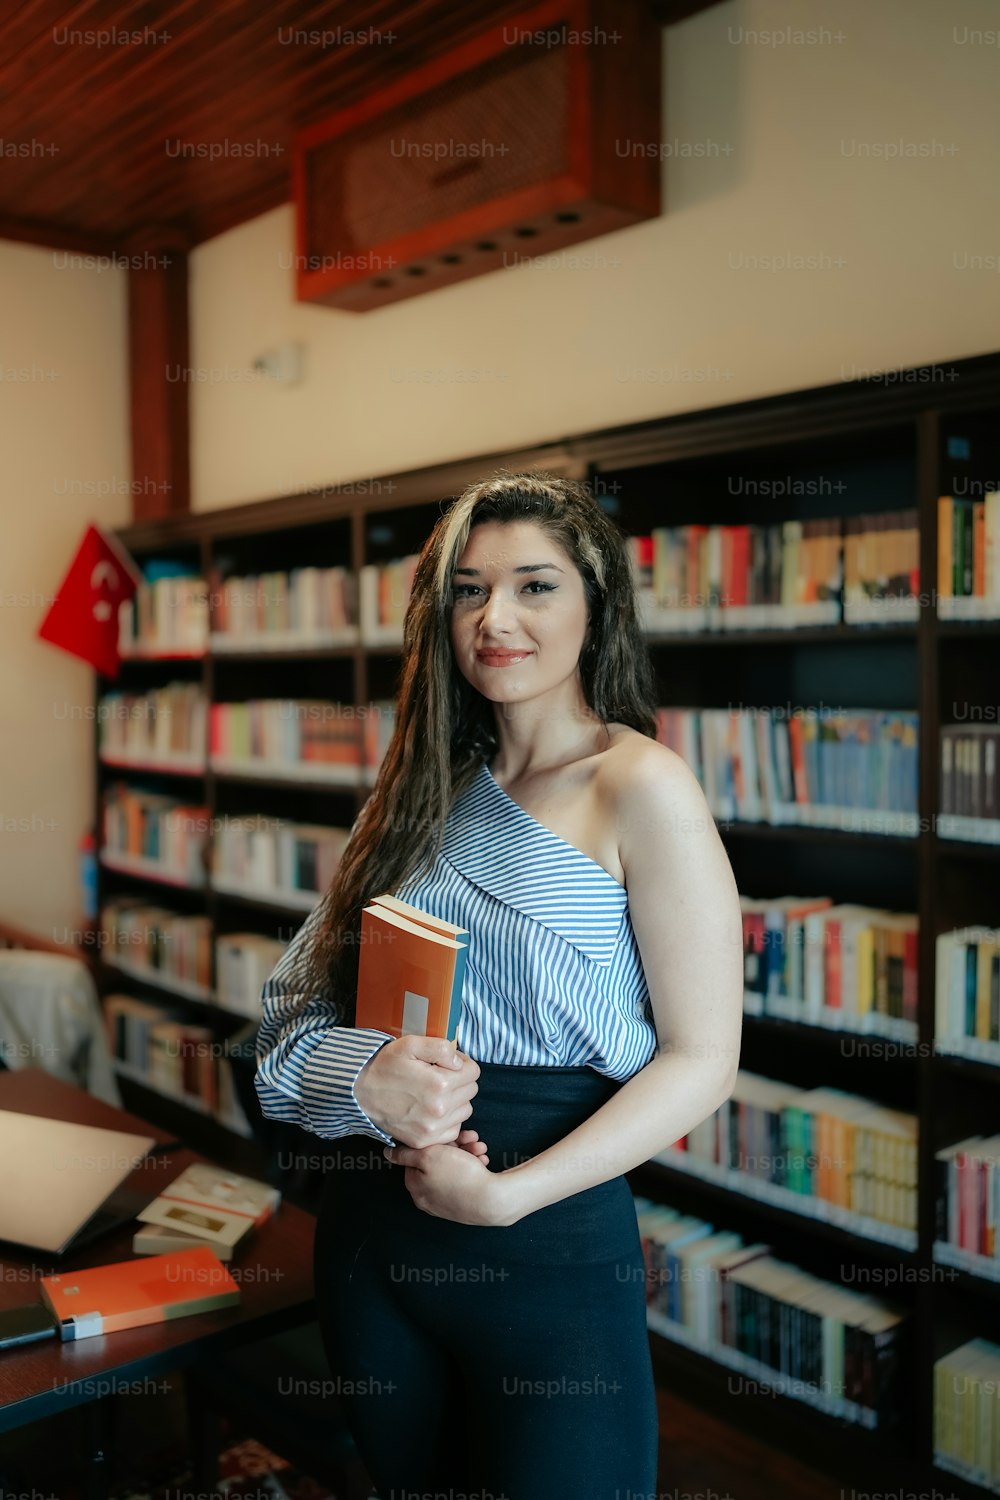 Eine Frau, die ein Buch in einer Bibliothek hält